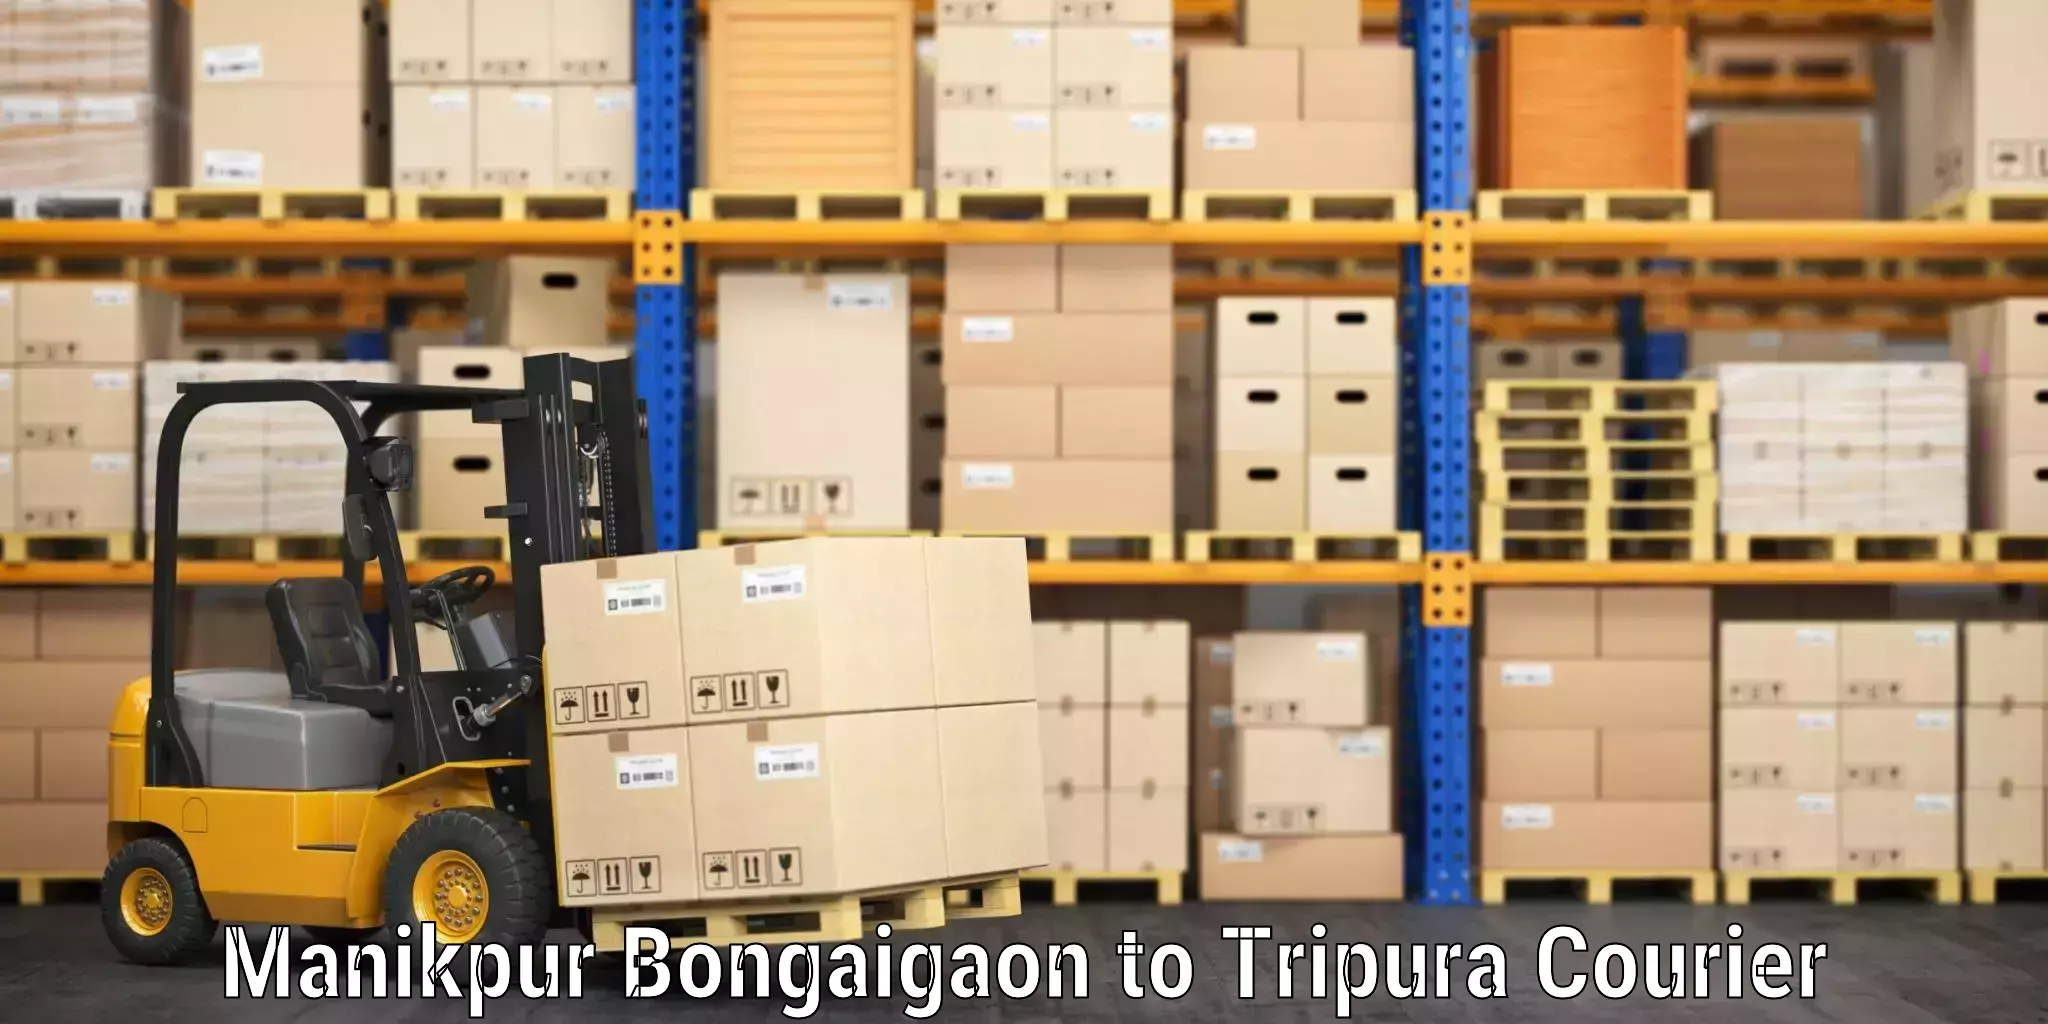 Baggage shipping service Manikpur Bongaigaon to North Tripura